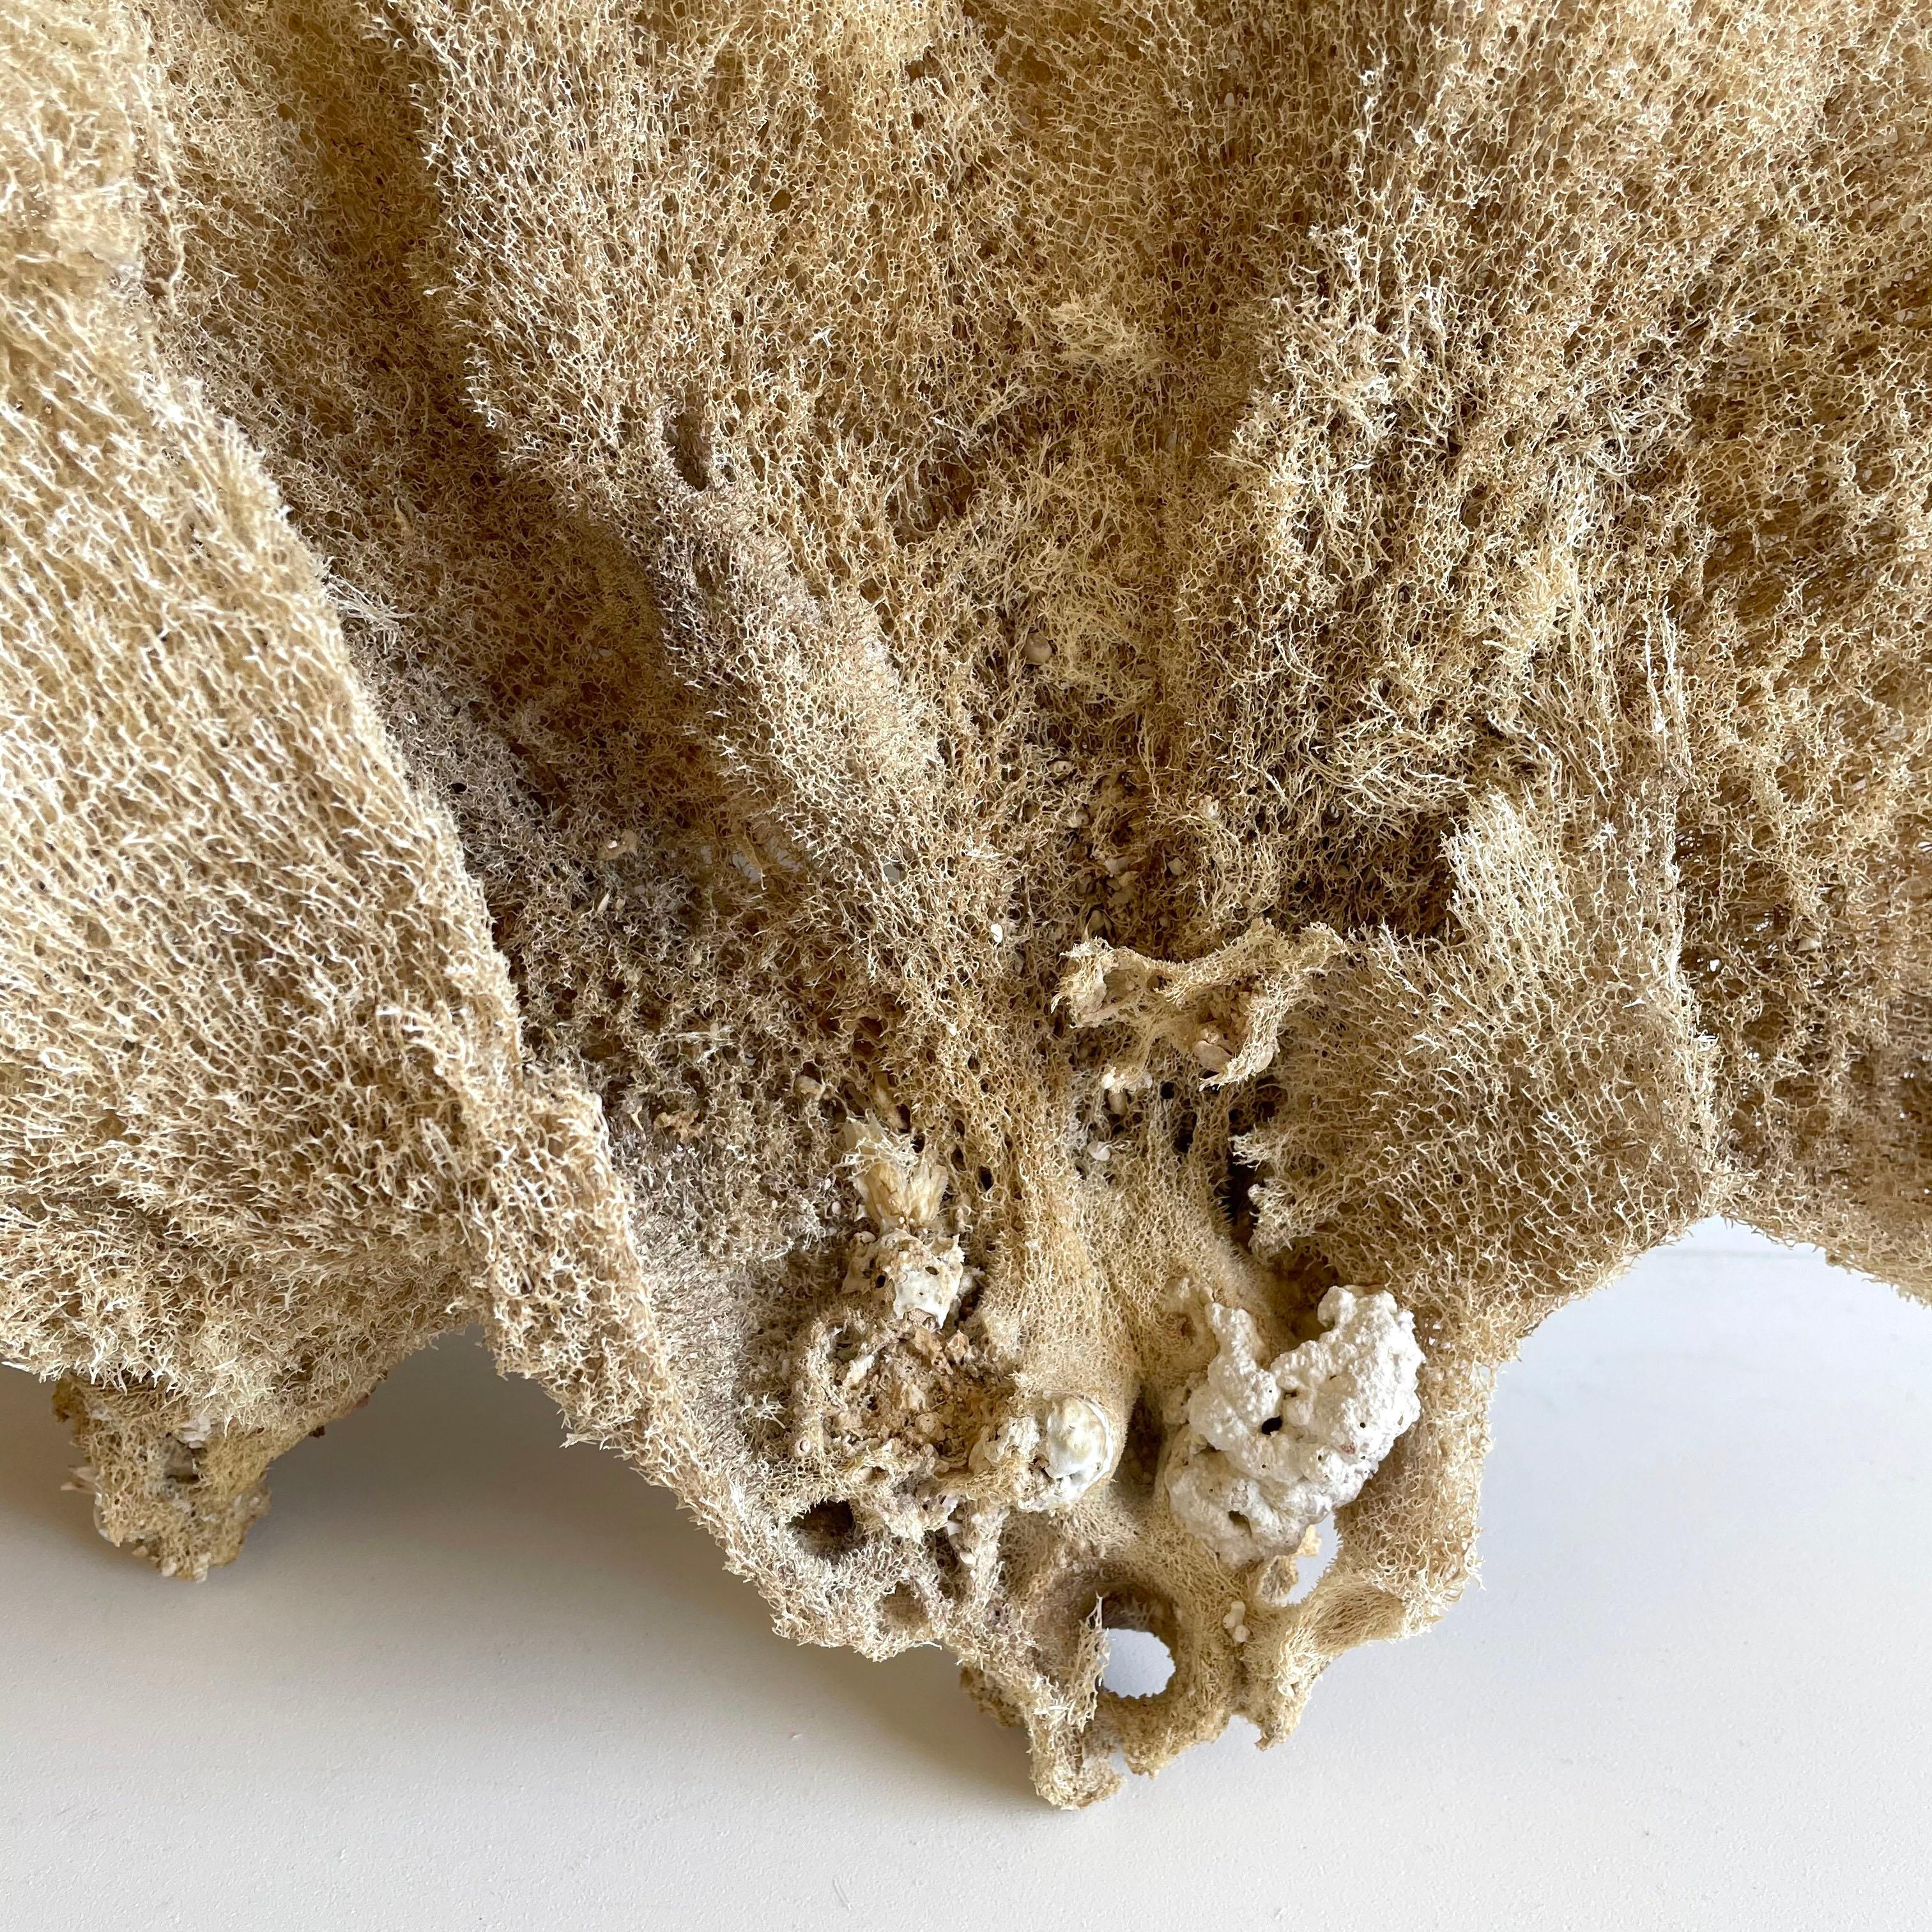 Sea sponge
Natural sea sponge in a large fan shape.
Size: 25” x 15” x 3”.
 